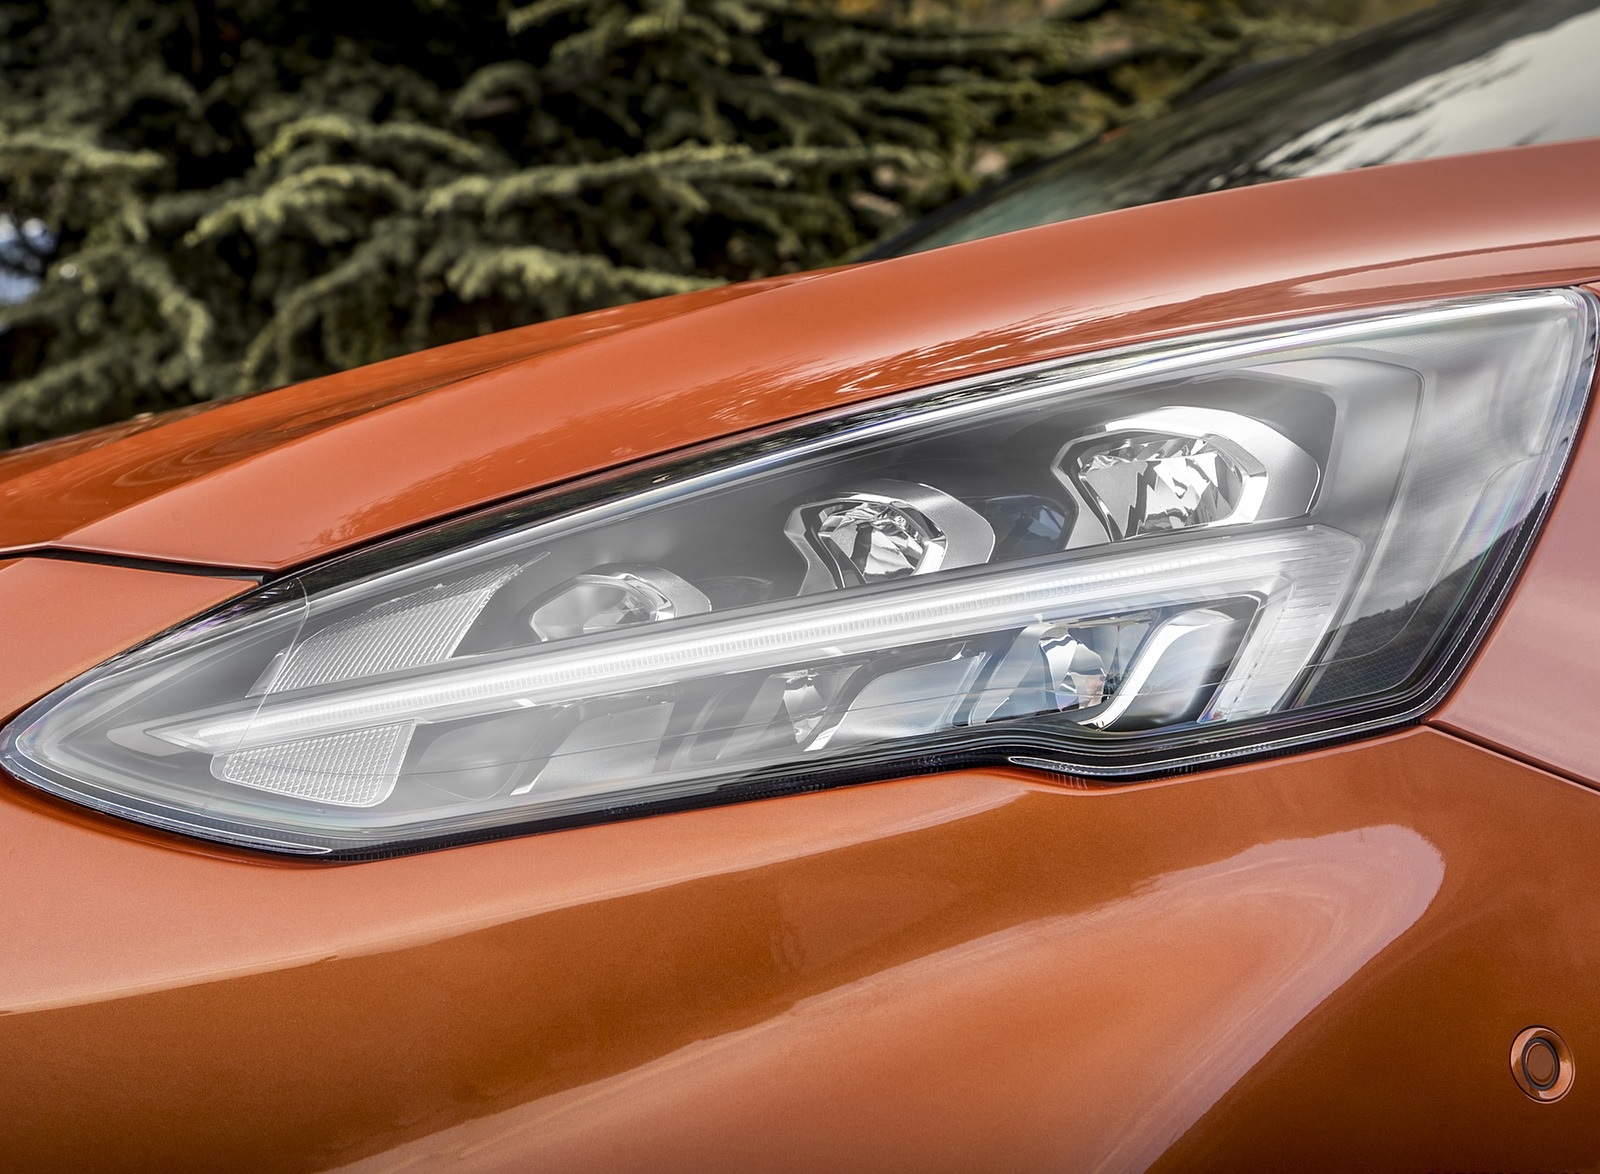 2019 Ford Focus Active 5-Door (Color: Orange Glow) Headlight Wallpapers #91 of 118